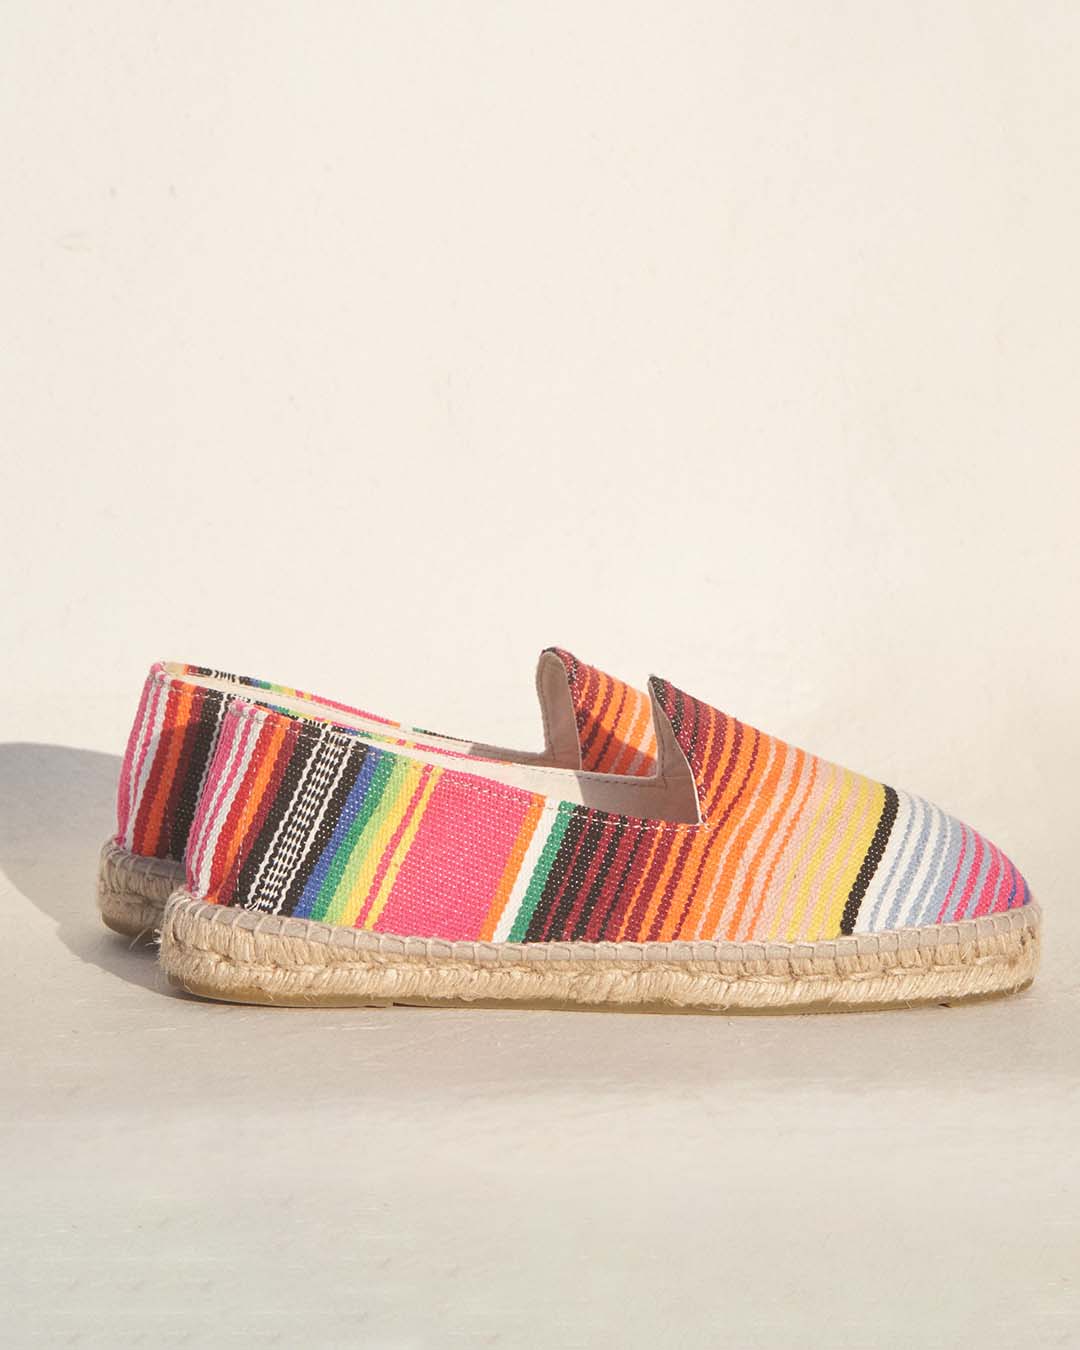 Espadrilles - Tulum - Multicolor Stripes